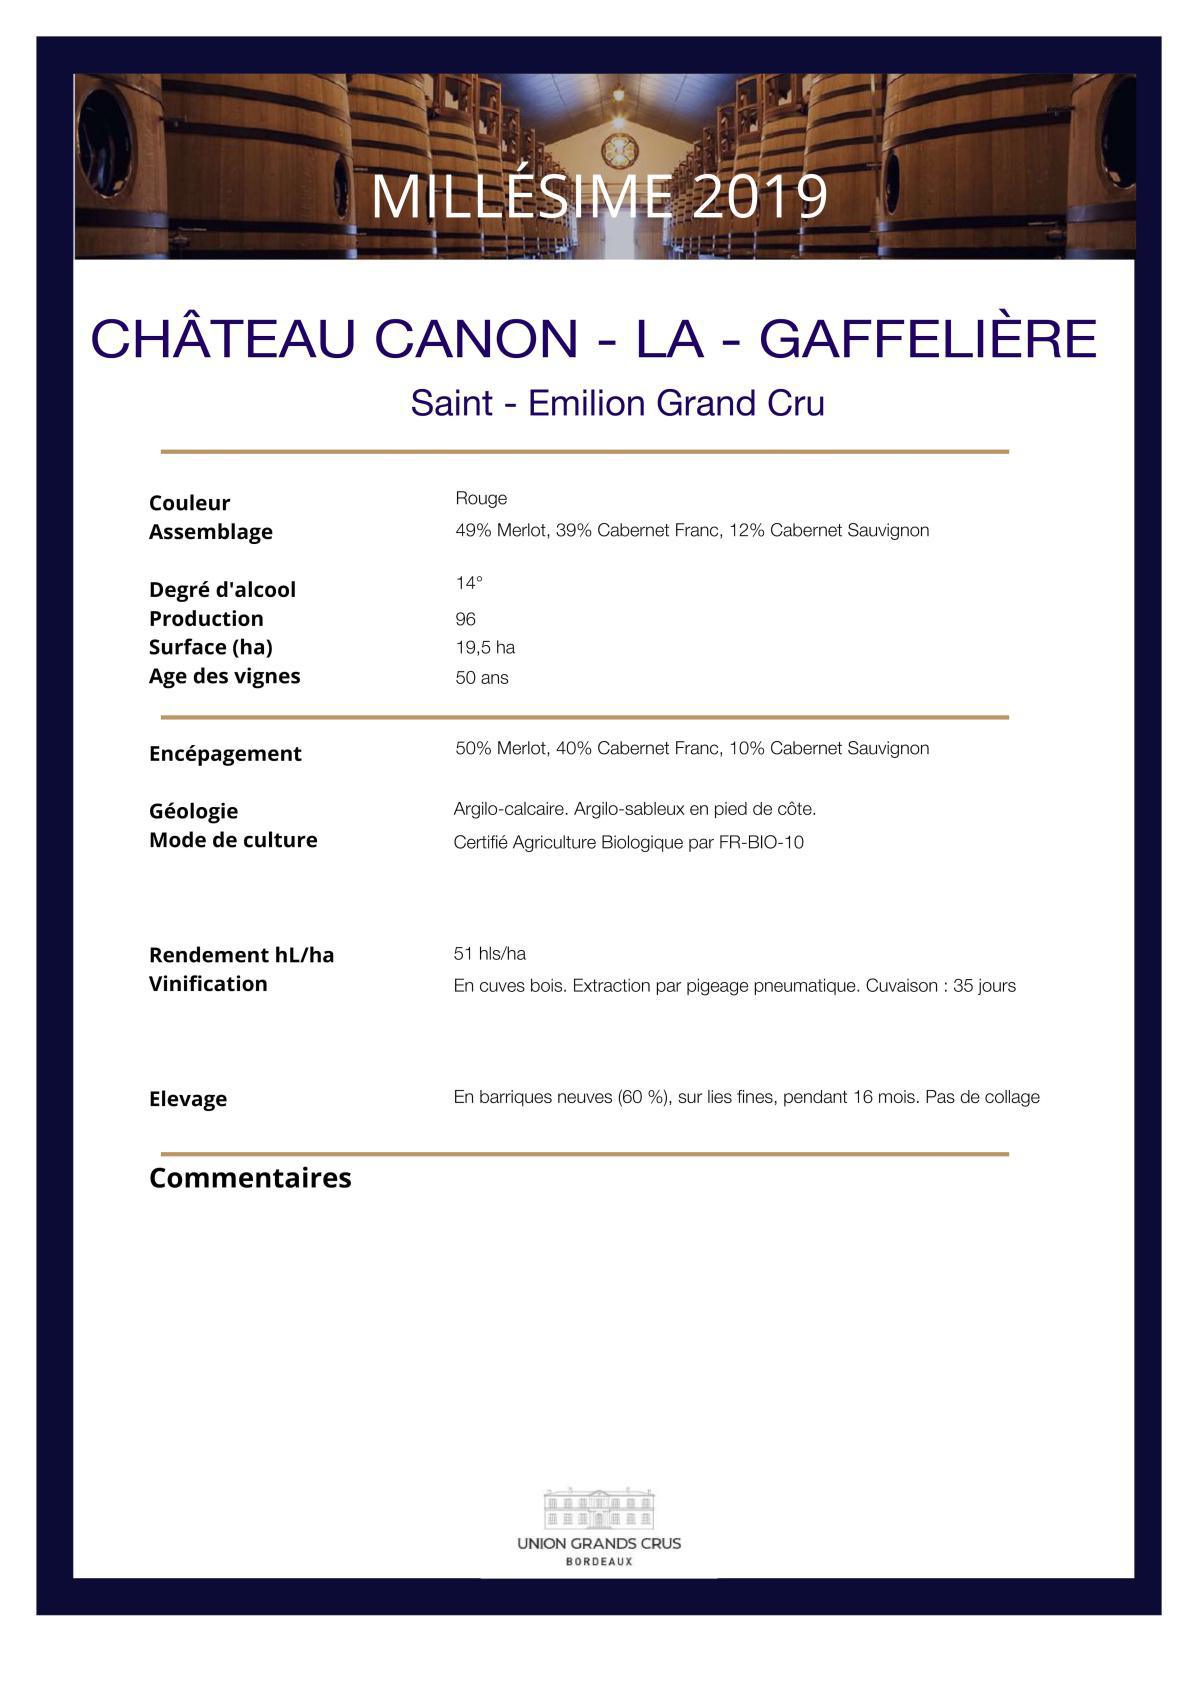 Château Canon - La - Gaffelière